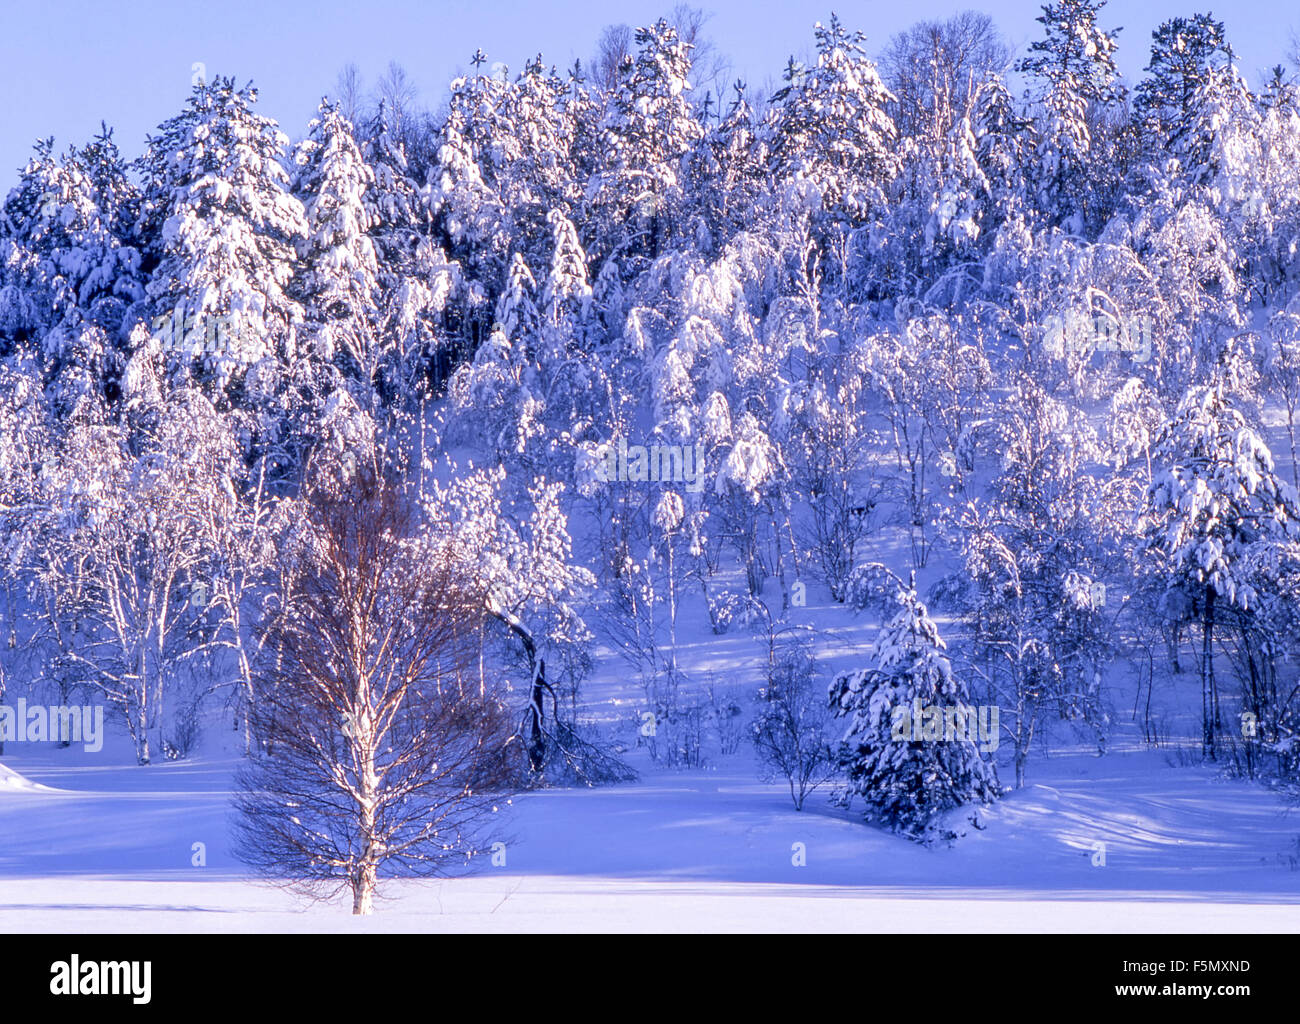 Les chutes de neige fraîche sur la colline d'arbres, Sudbury, Ontario, Canada. Banque D'Images